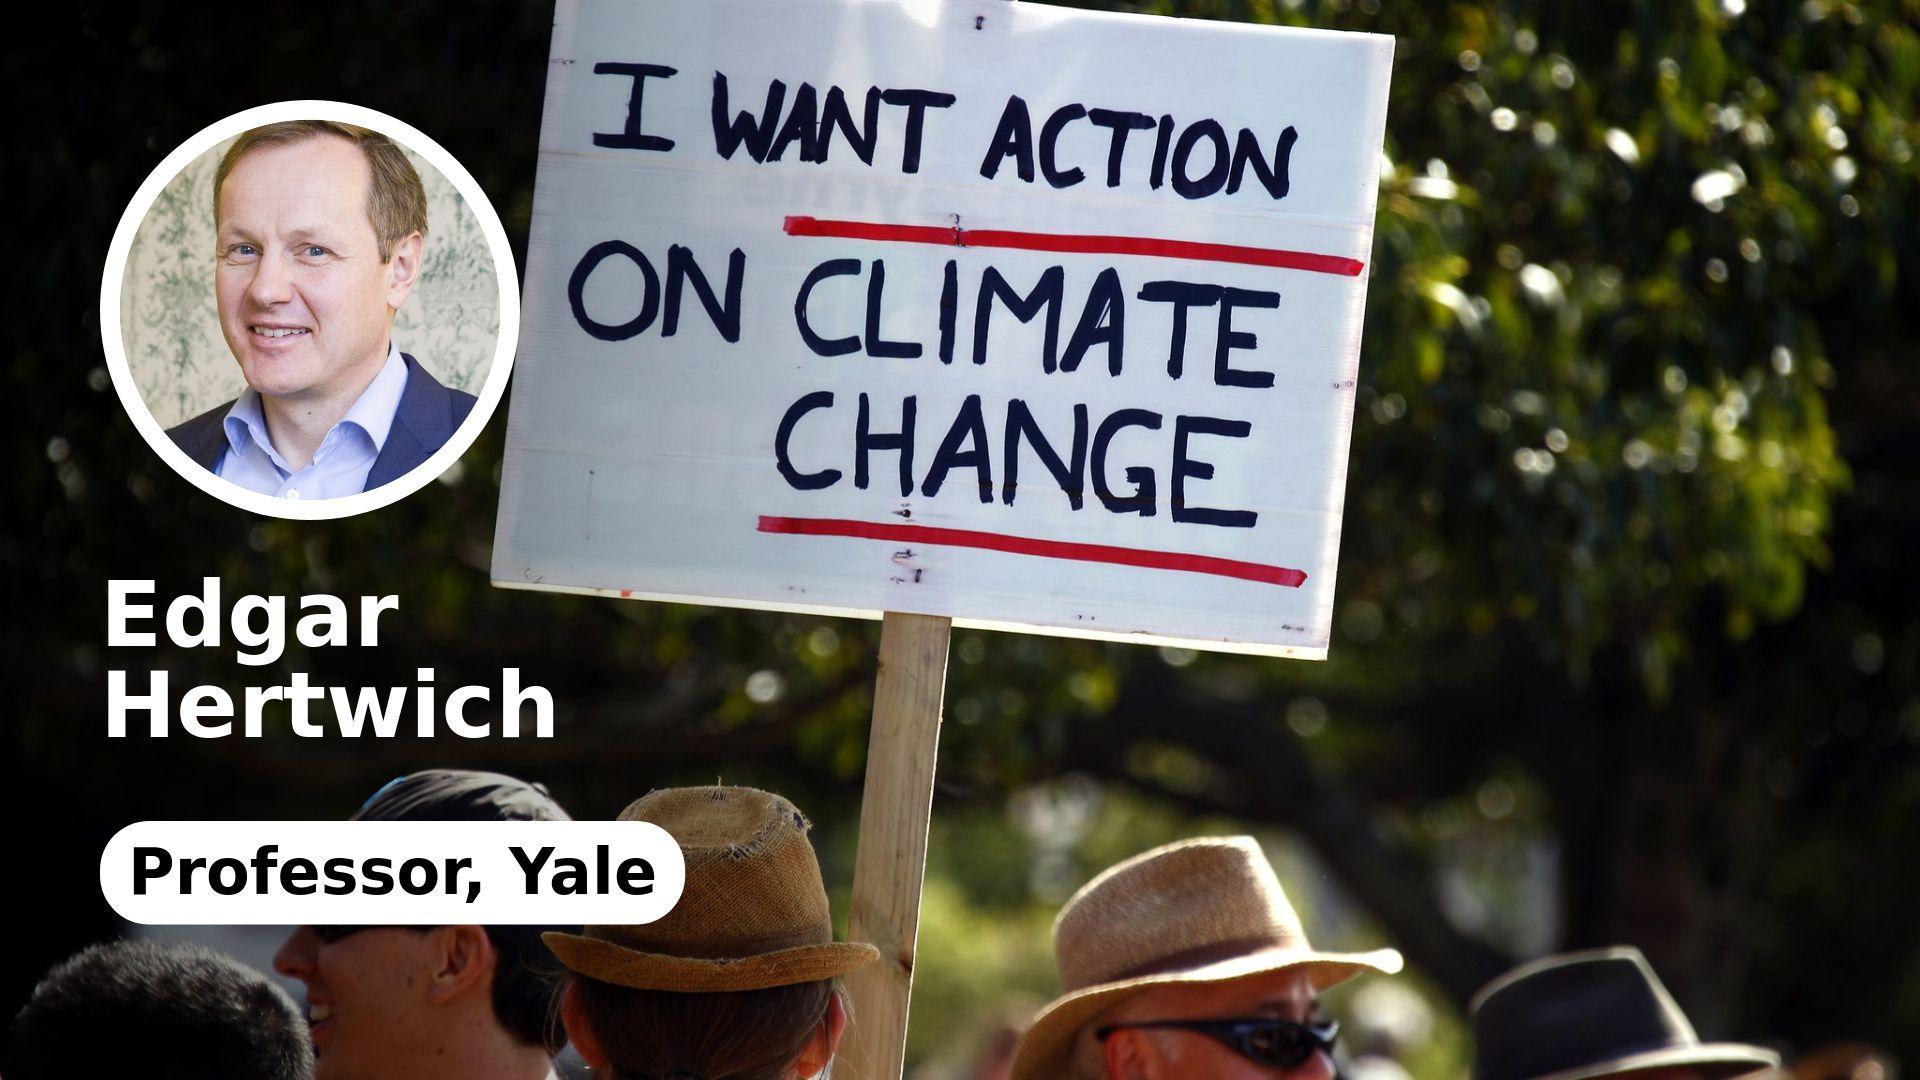  Artikkelforfatteren ønsker sterkere grasrotbevegelser i kampen for systemendringer som kan redde klimaet. Han mener vitenskapen har fått dominere for mye. 